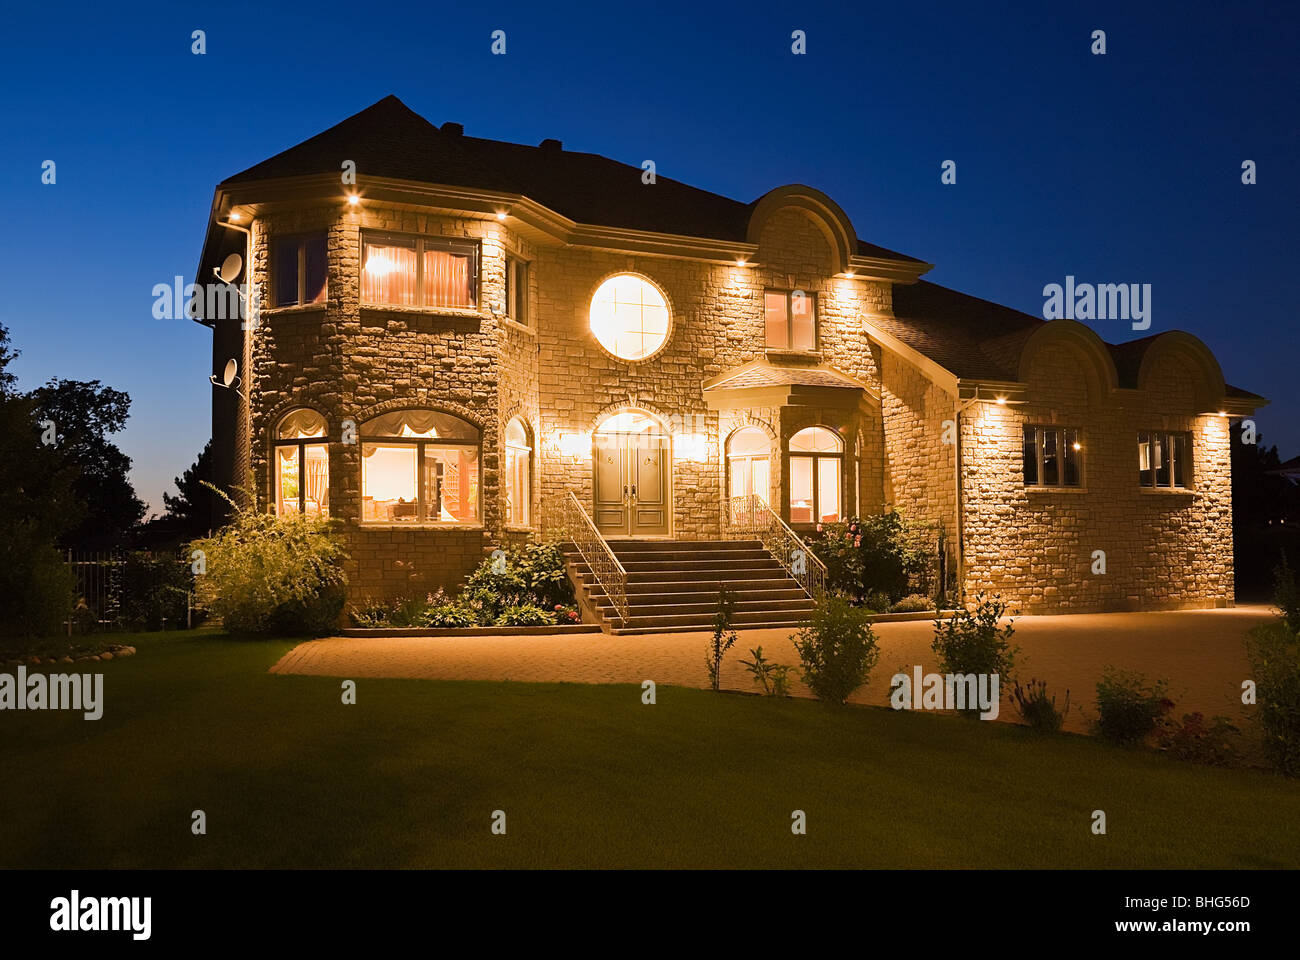 Large house illuminated Stock Photo